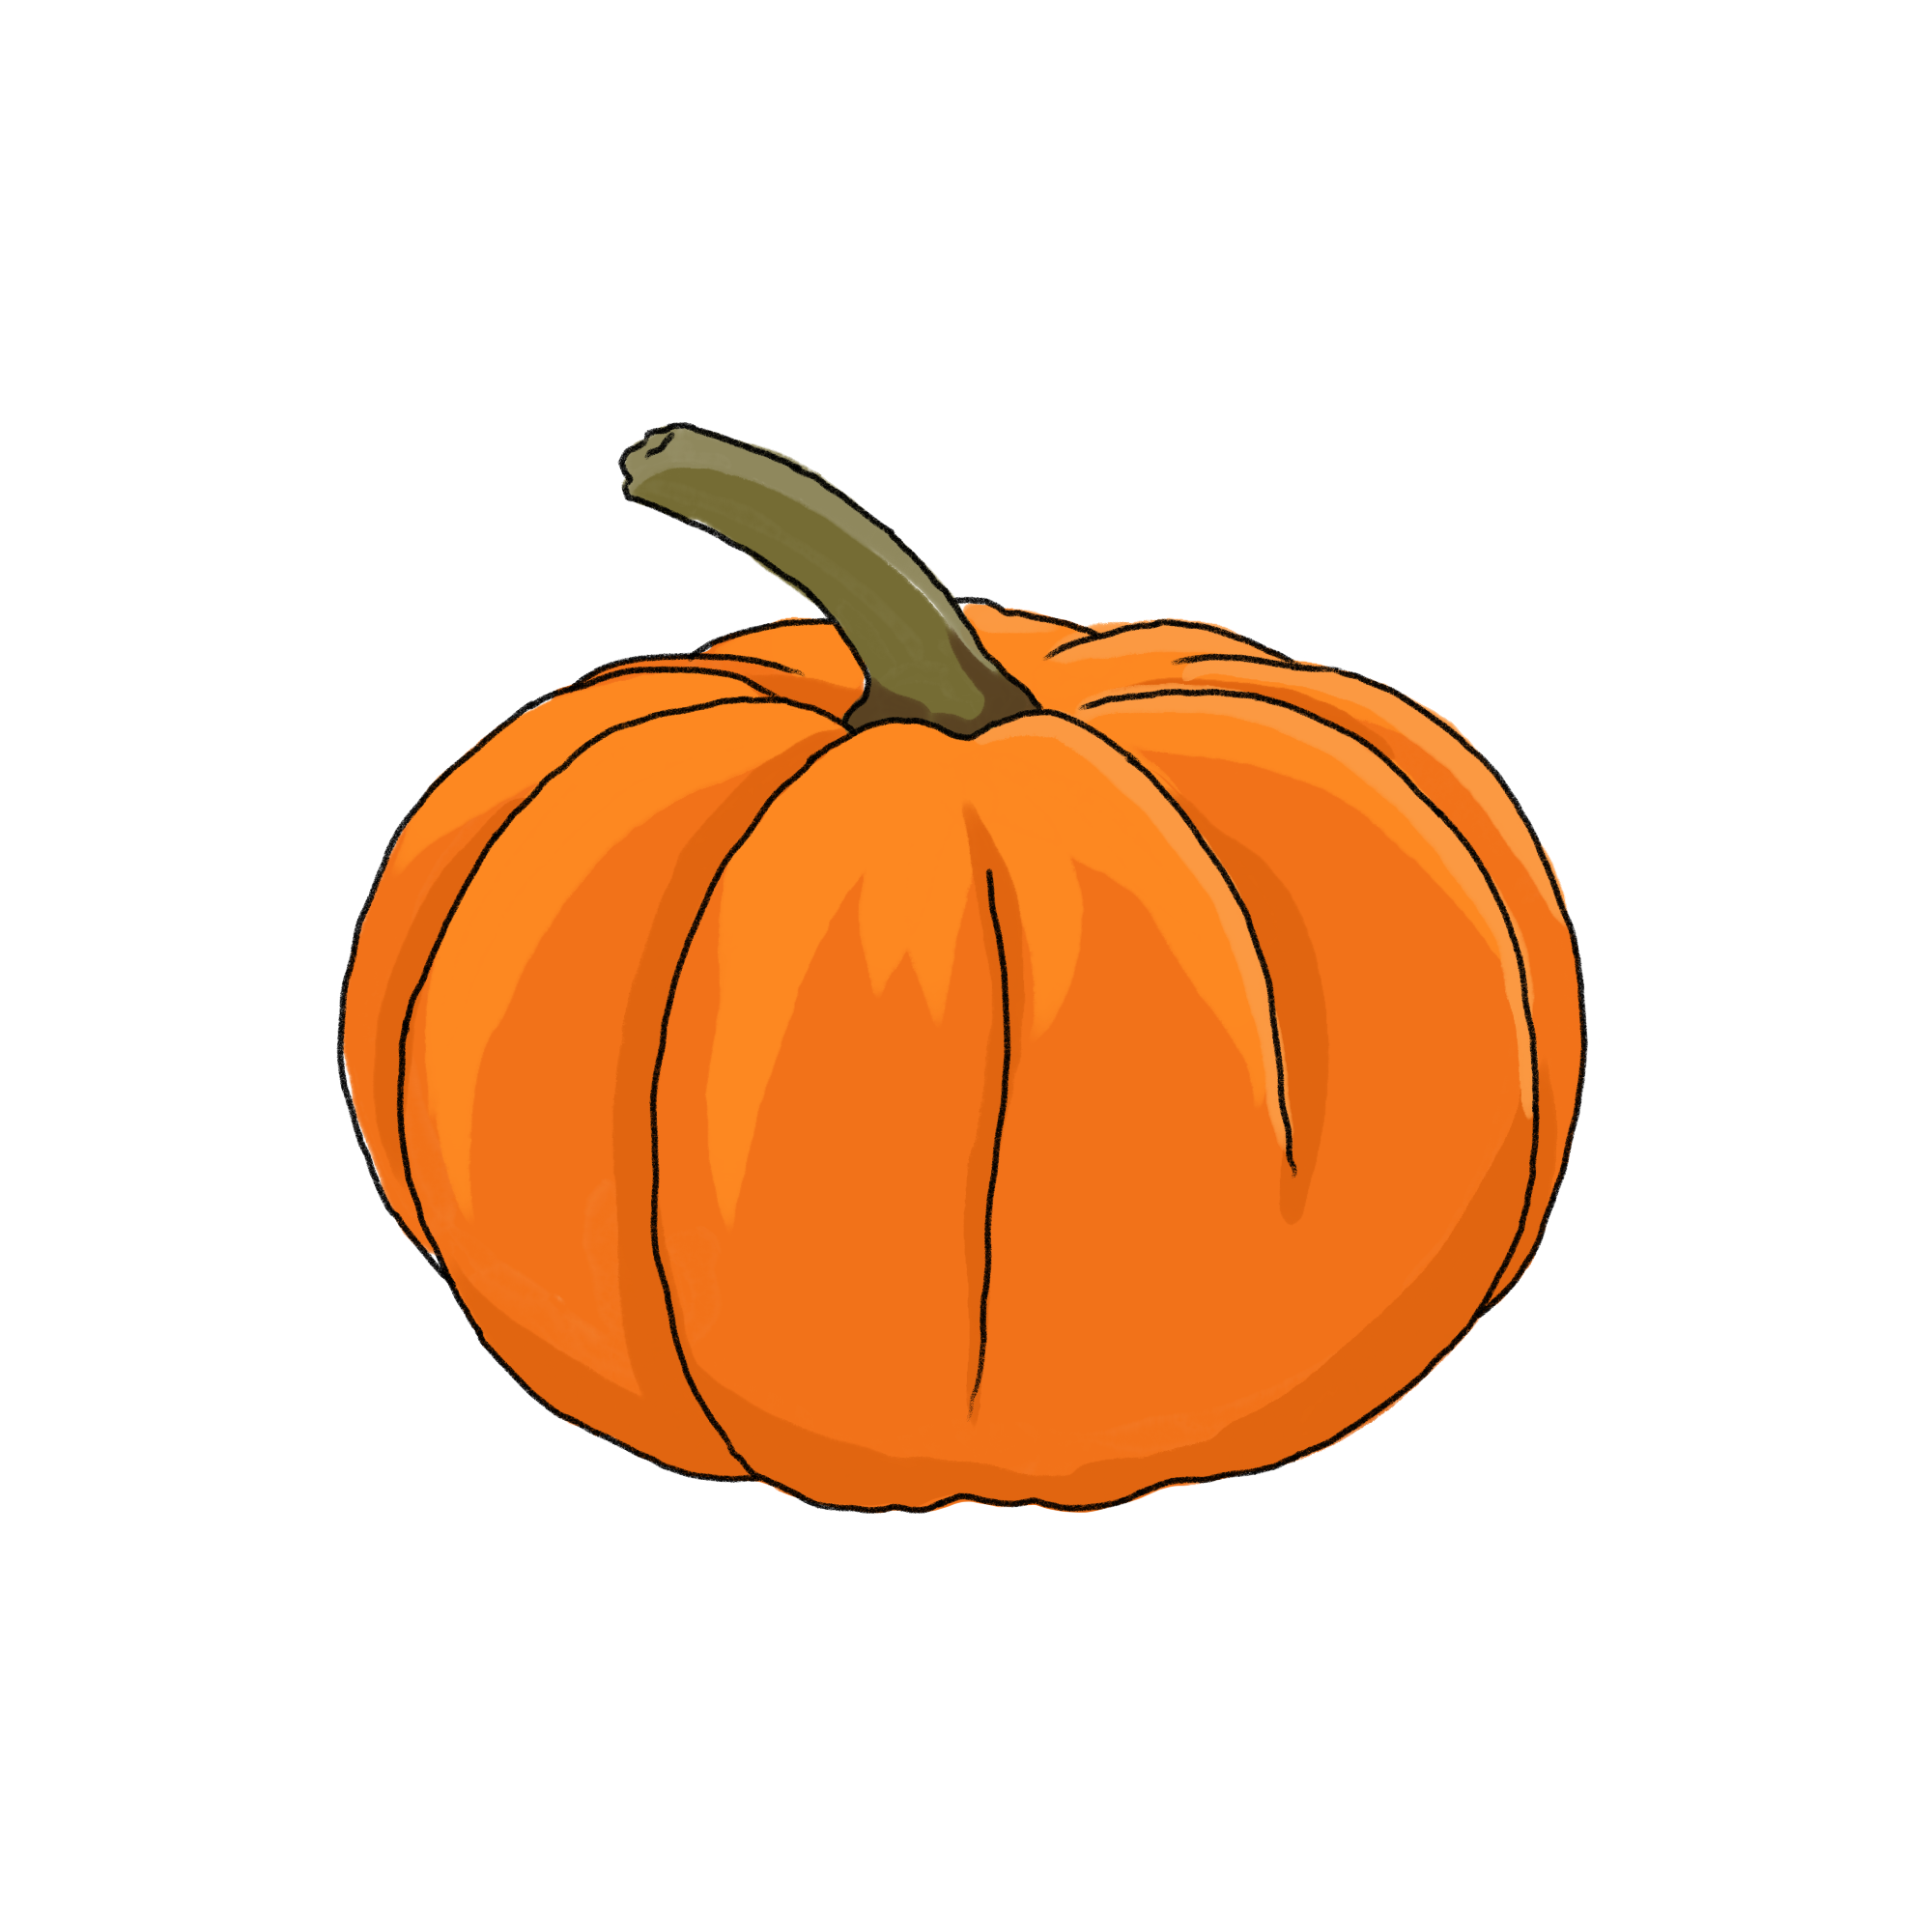 かぼちゃのイラスト 03 フリー素材 Greenstock40